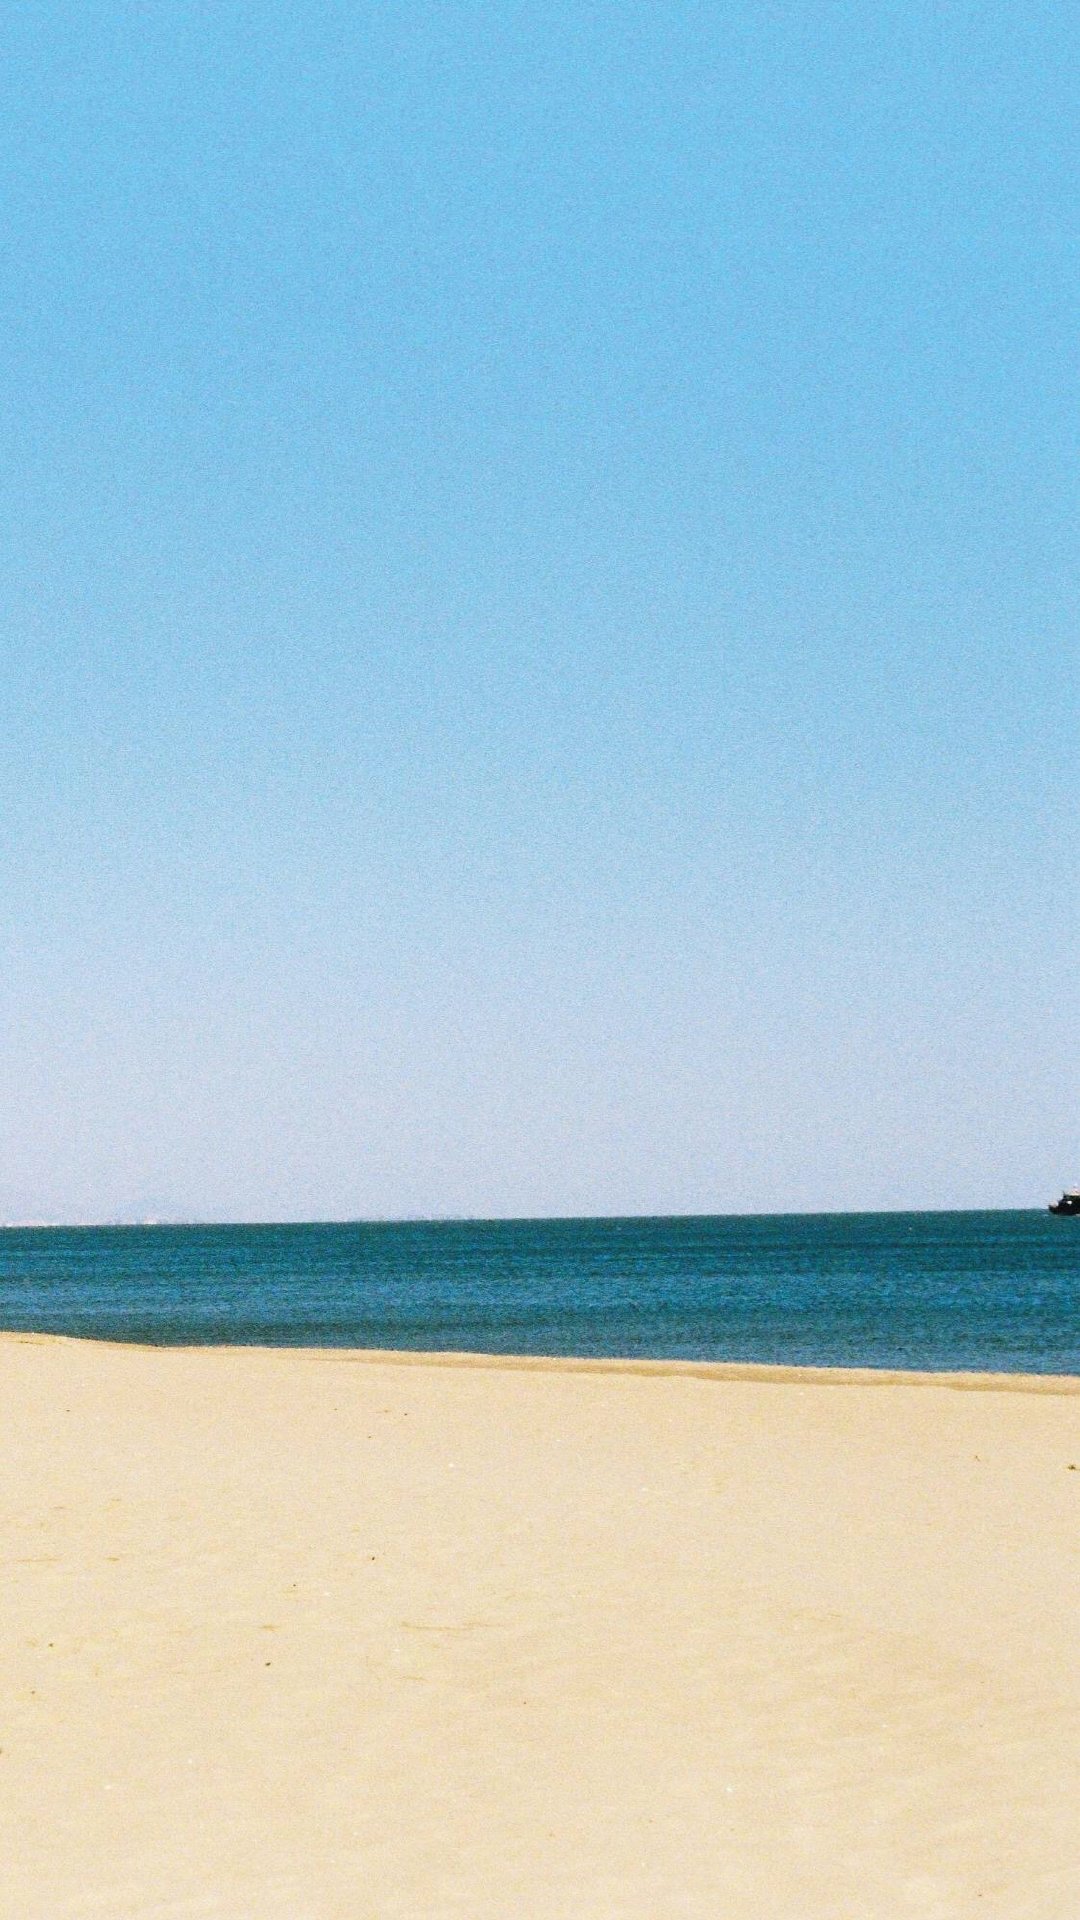 清新海边沙滩风景手机壁纸